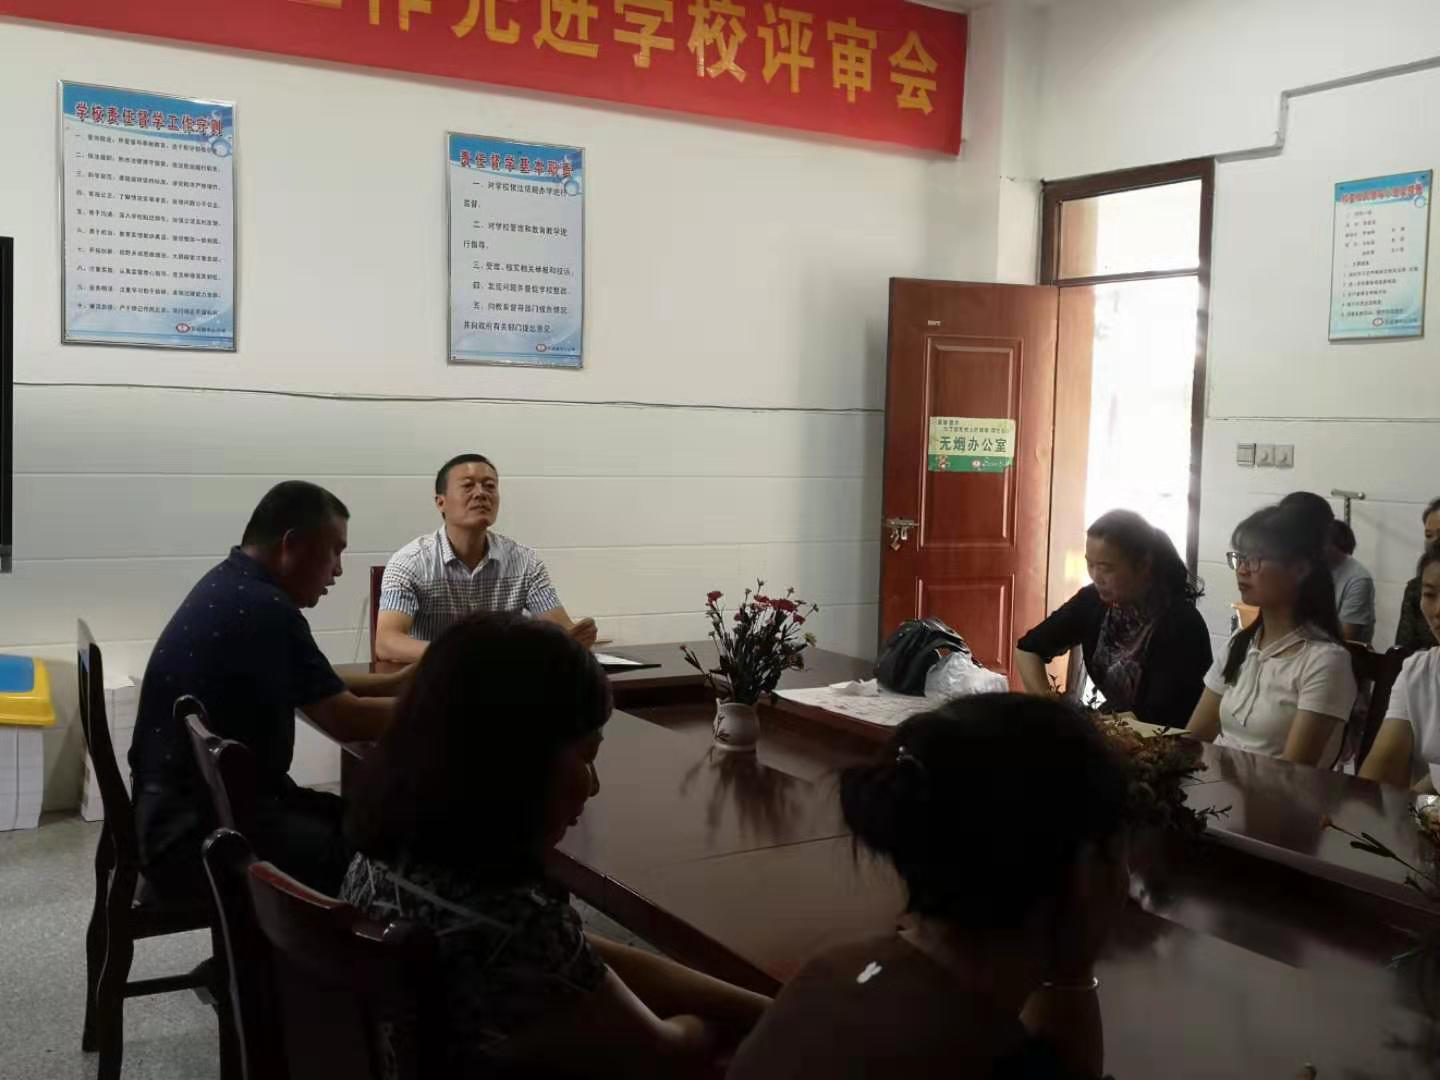 瓦窑镇中心小学举行青蓝工程座谈会